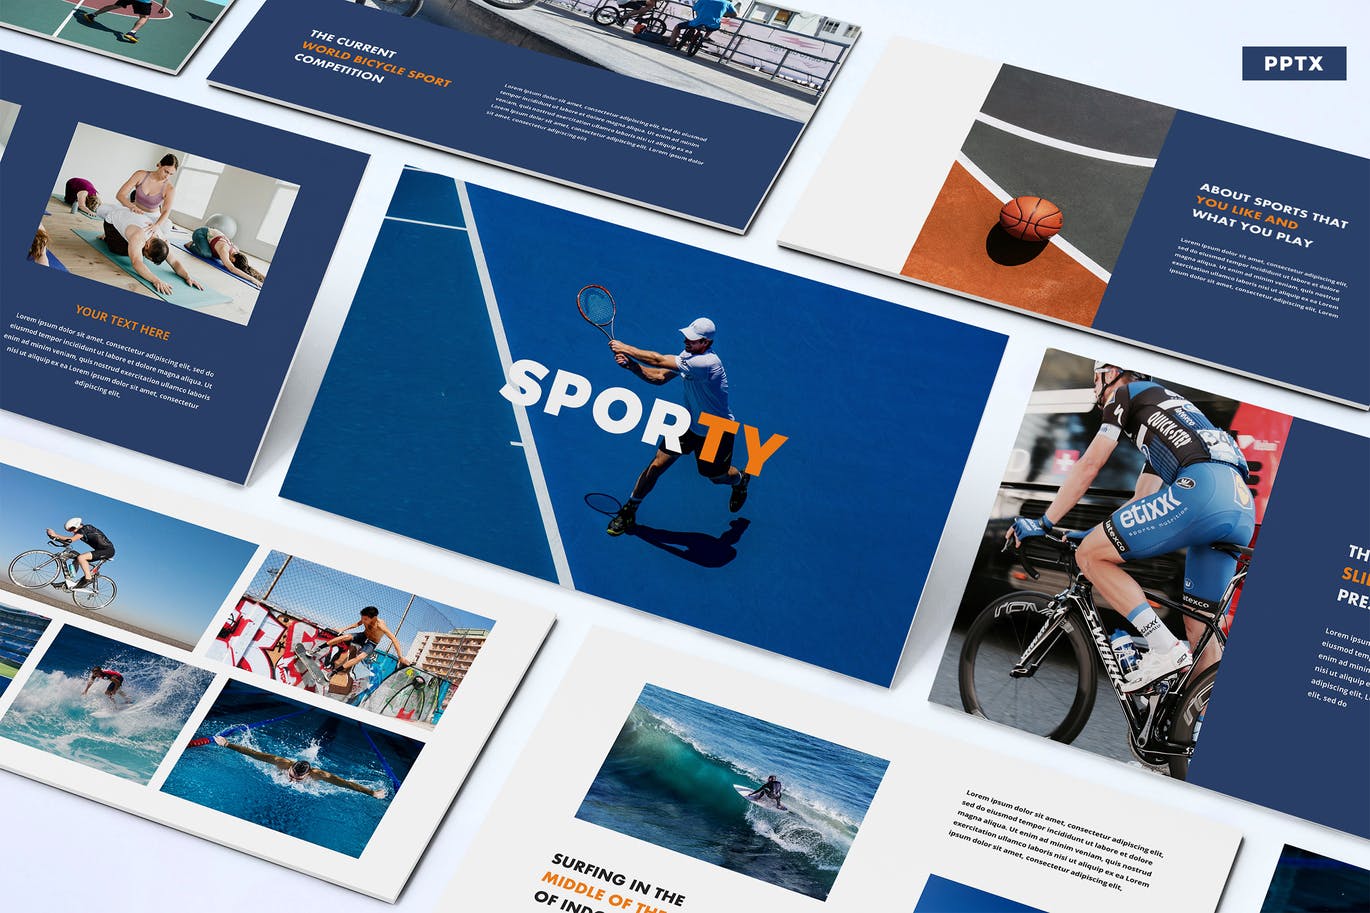 体育运动项目推广PPT幻灯片模板合集 Sporty – Powerpoint Template